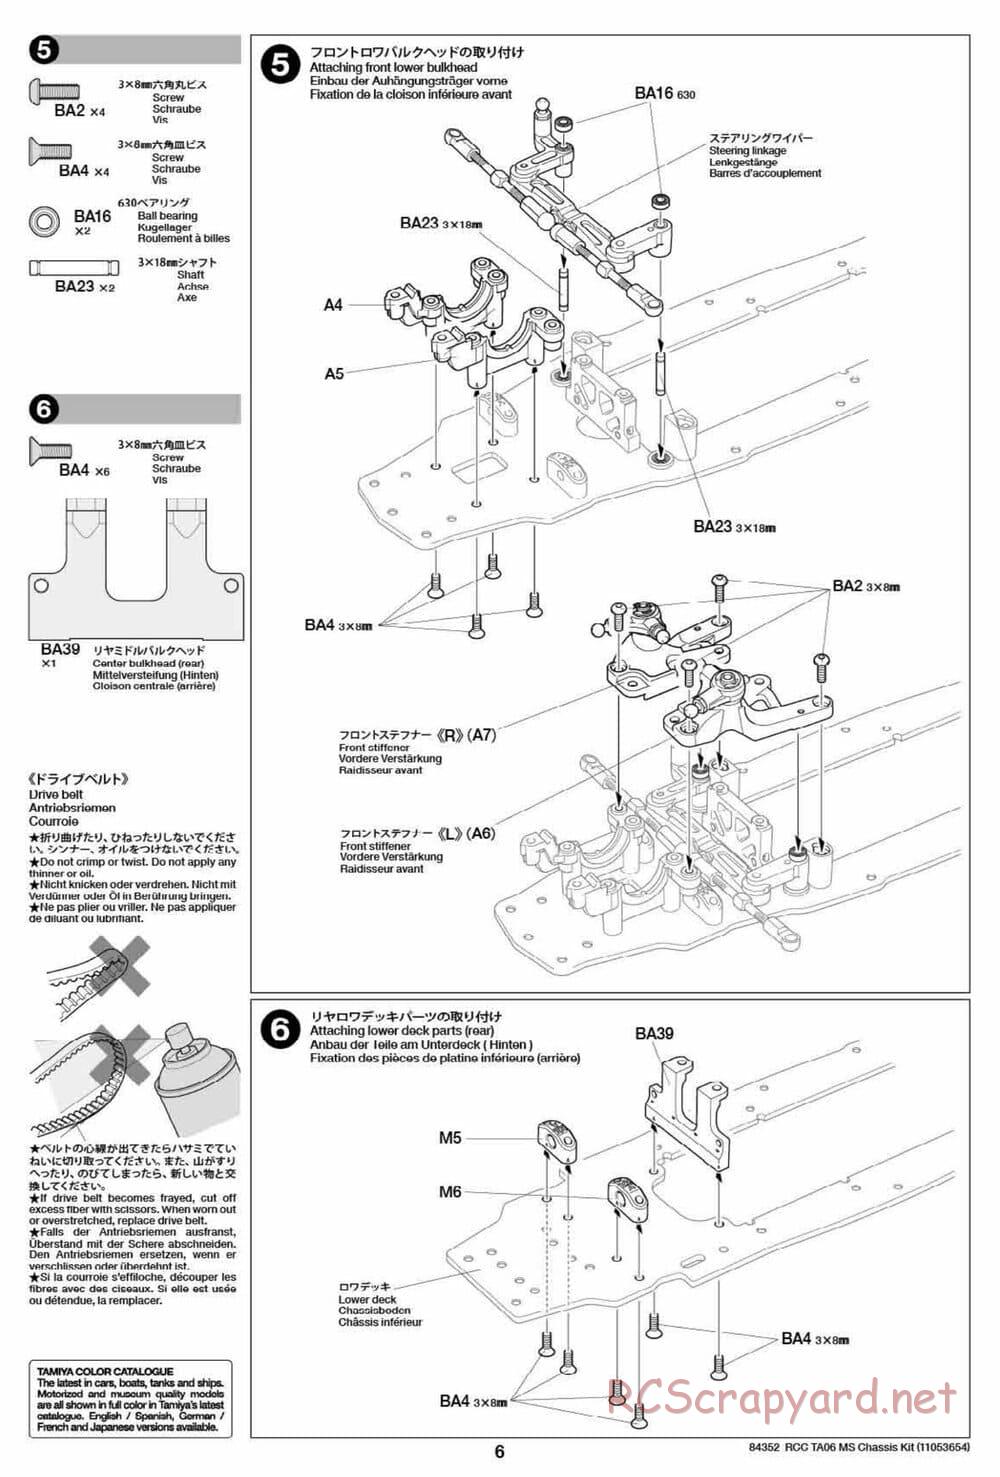 Tamiya - TA06 MS Chassis - Manual - Page 6